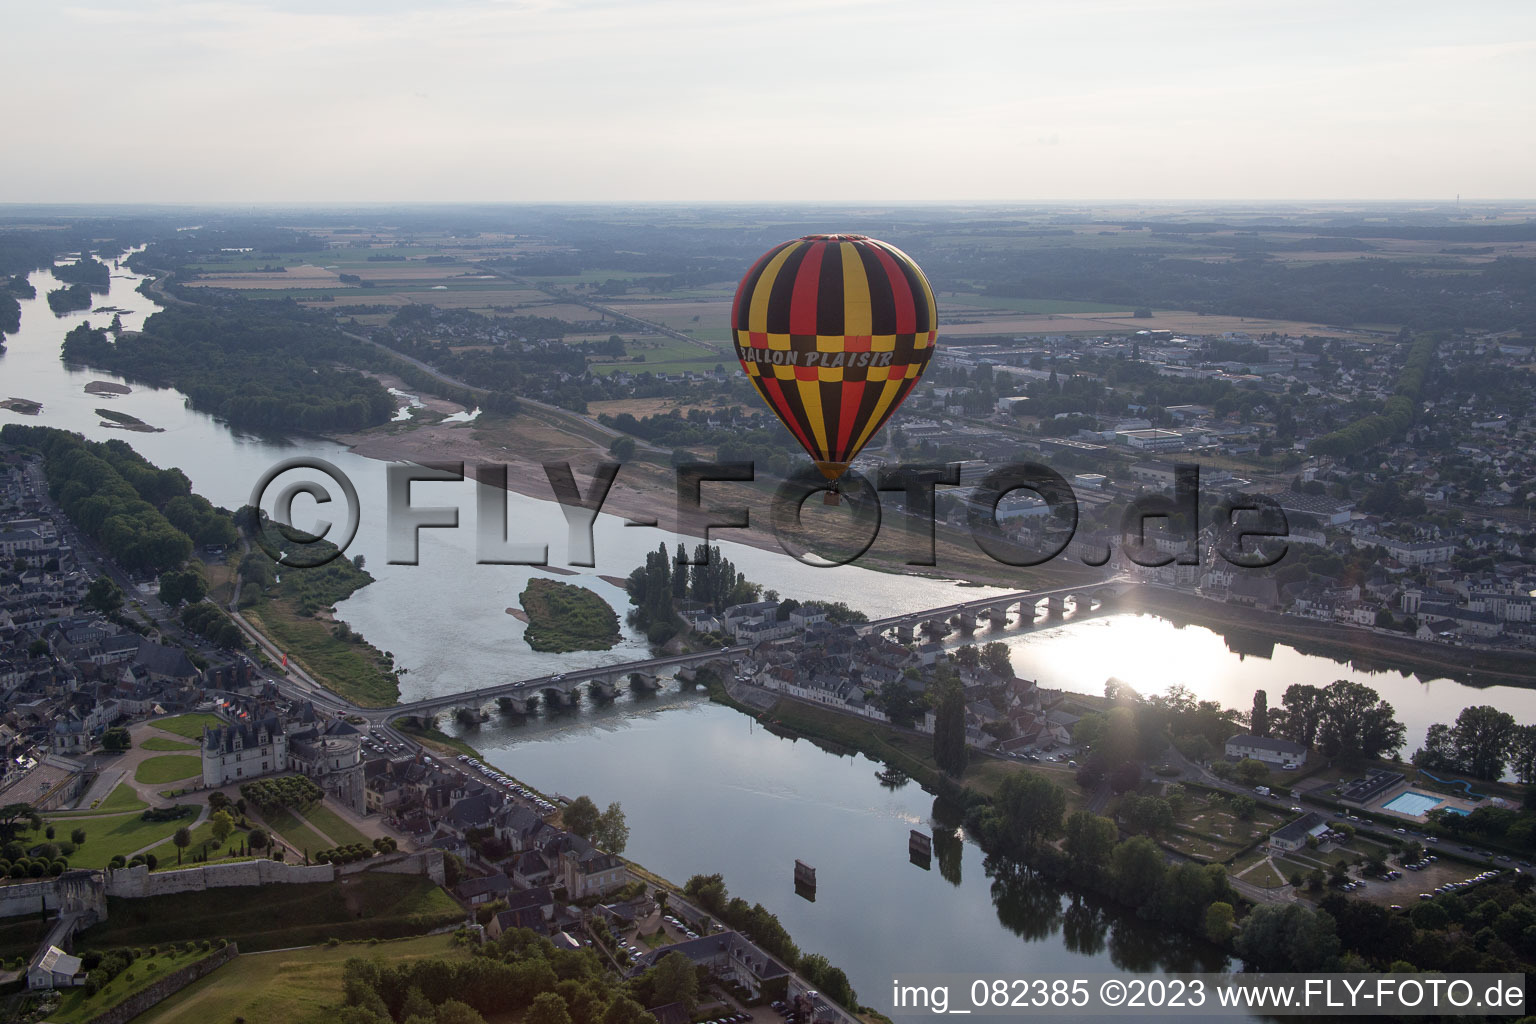 Amboise dans le département Indre et Loire, France vue d'en haut